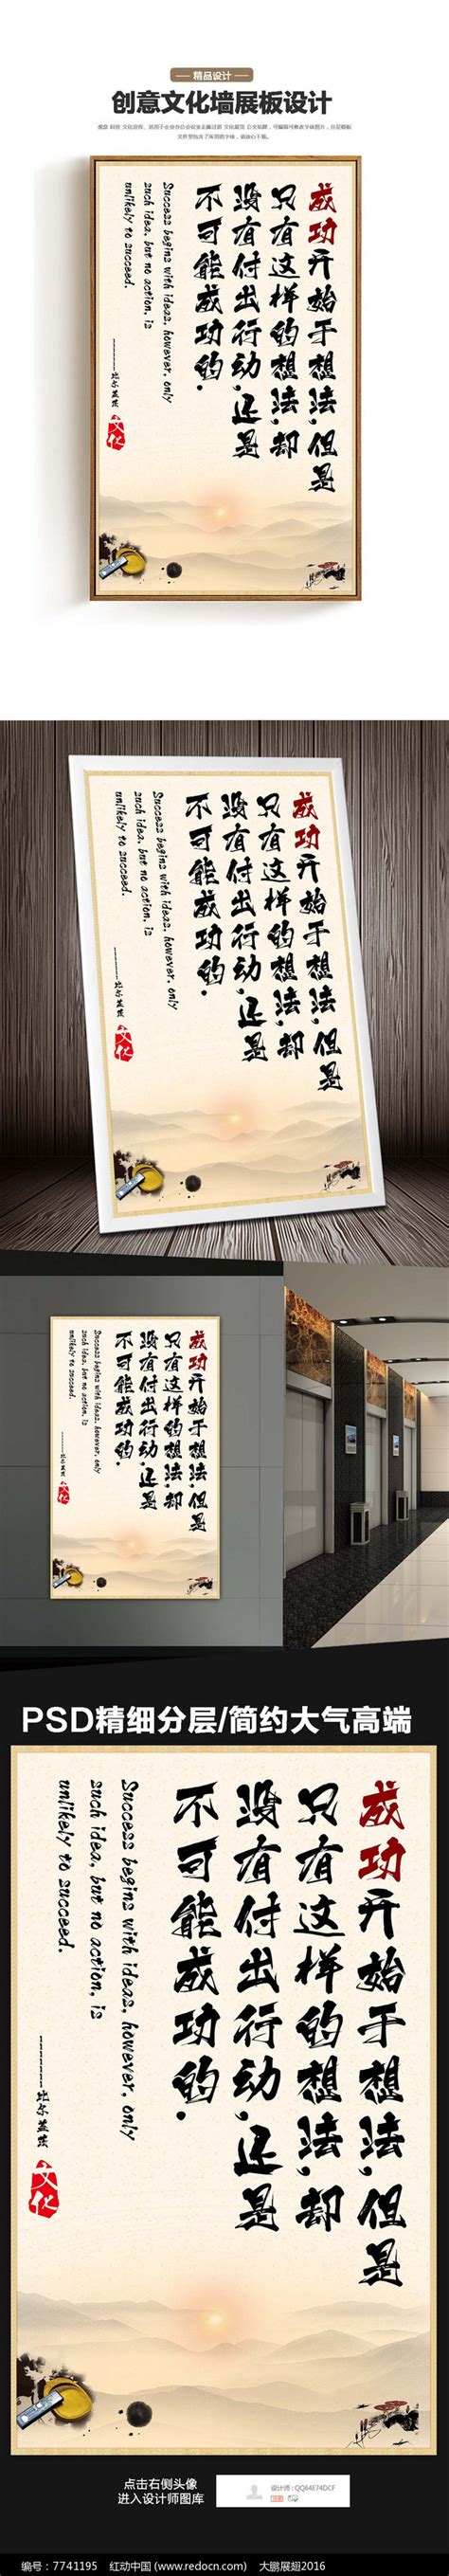 比尔盖茨名言之成功文化展板图片下载_红动中国